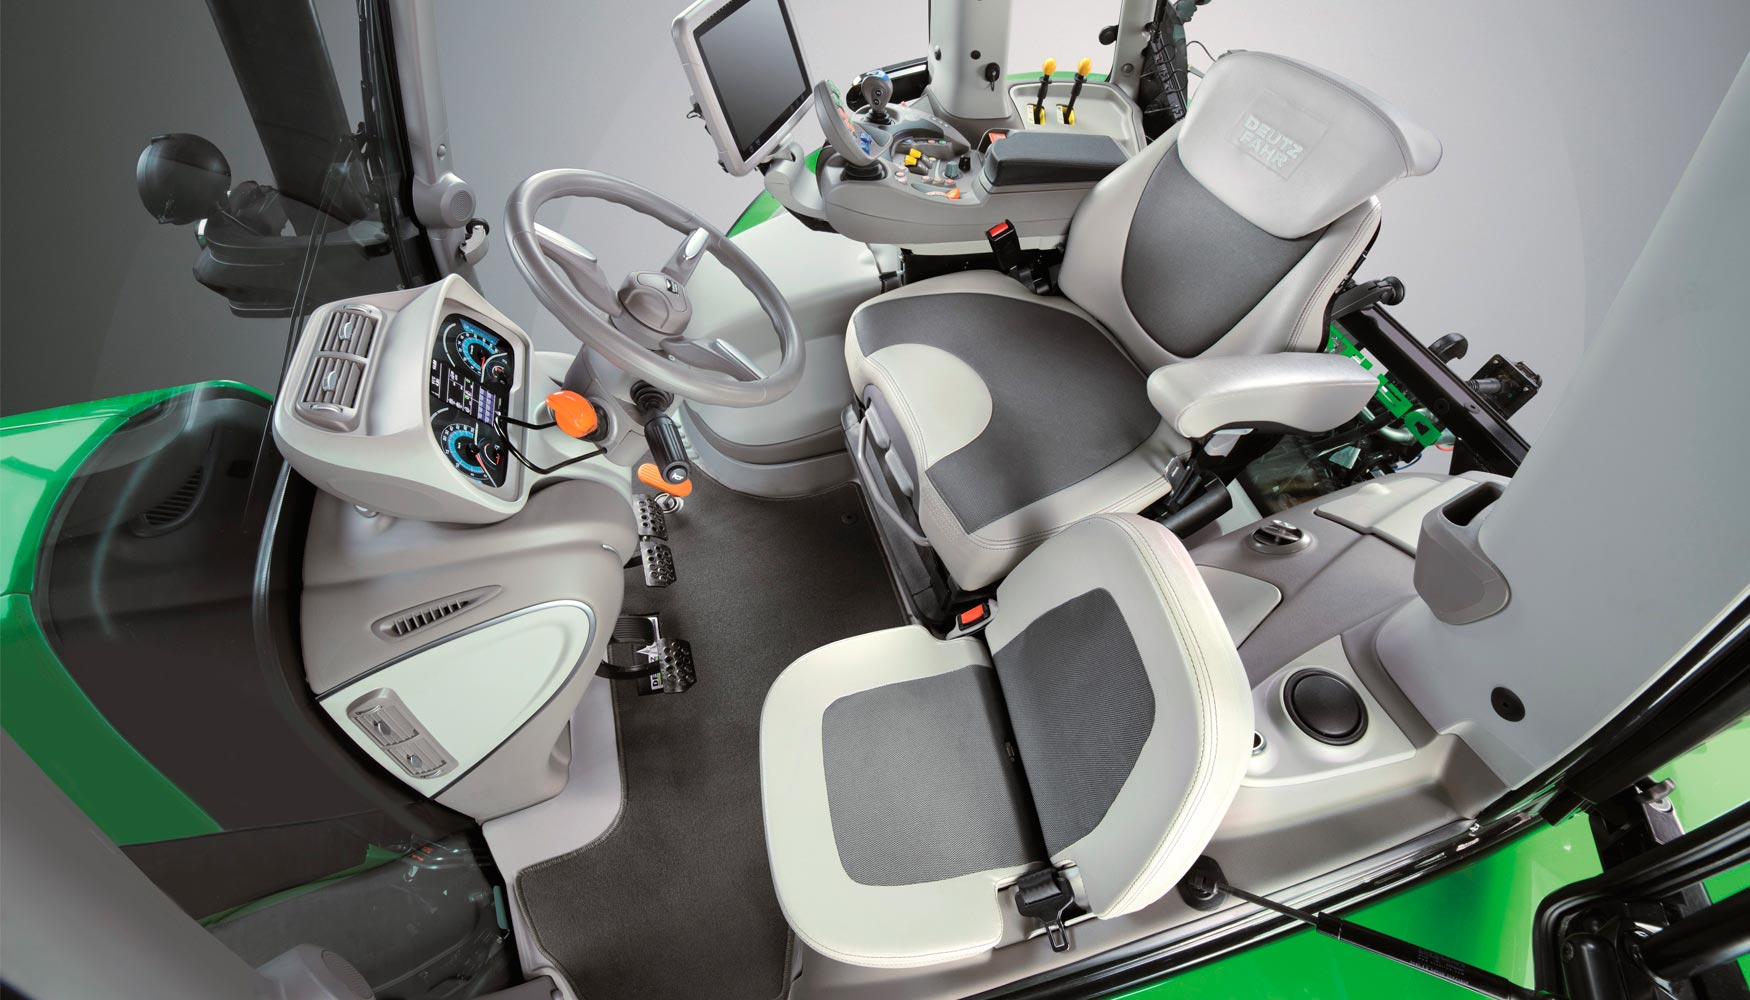 La Serie 6 tiene disponibles dos tipos de cabina con diferentes niveles de confort